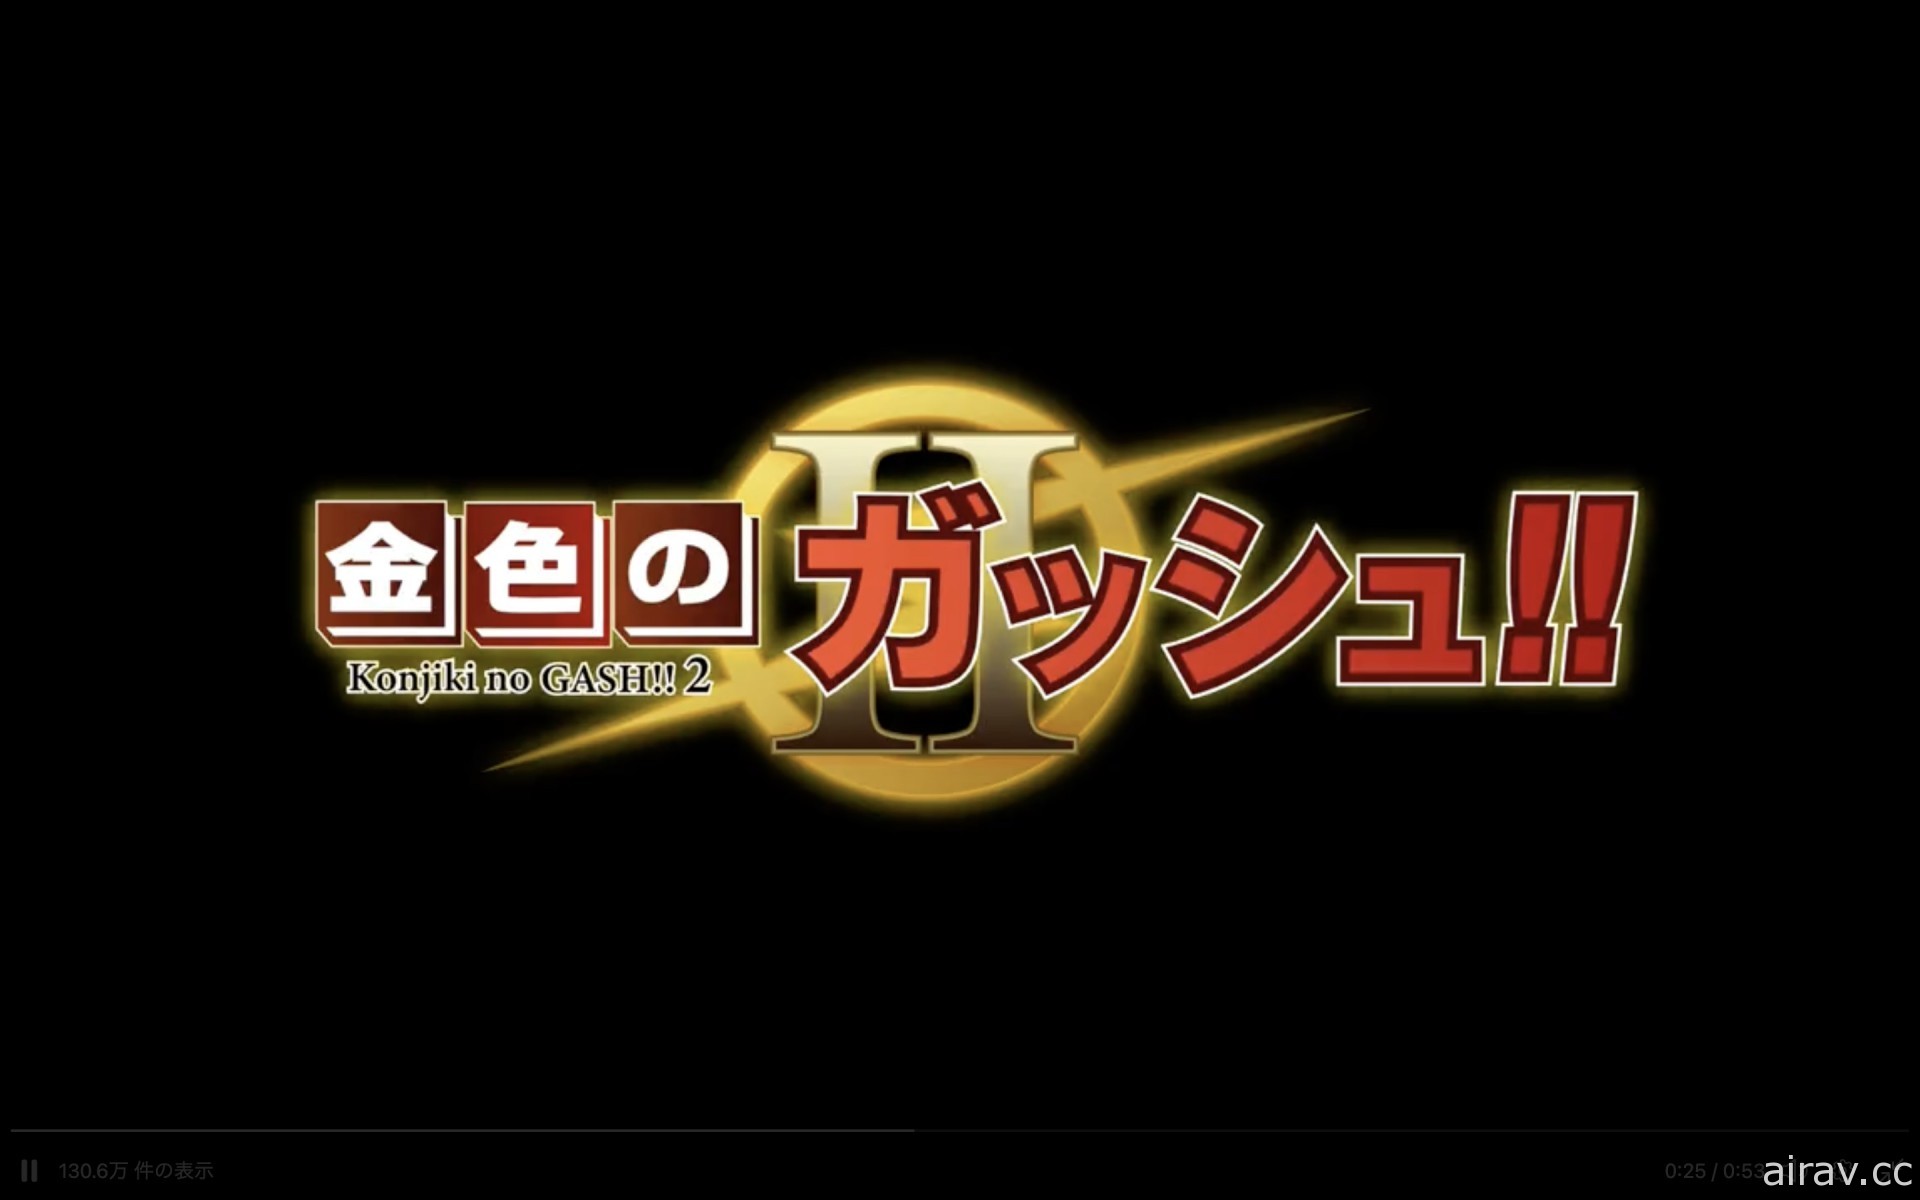 雷句誠宣布《魔法少年賈修 2》將於 3 月中旬在日本各大電子書店推出